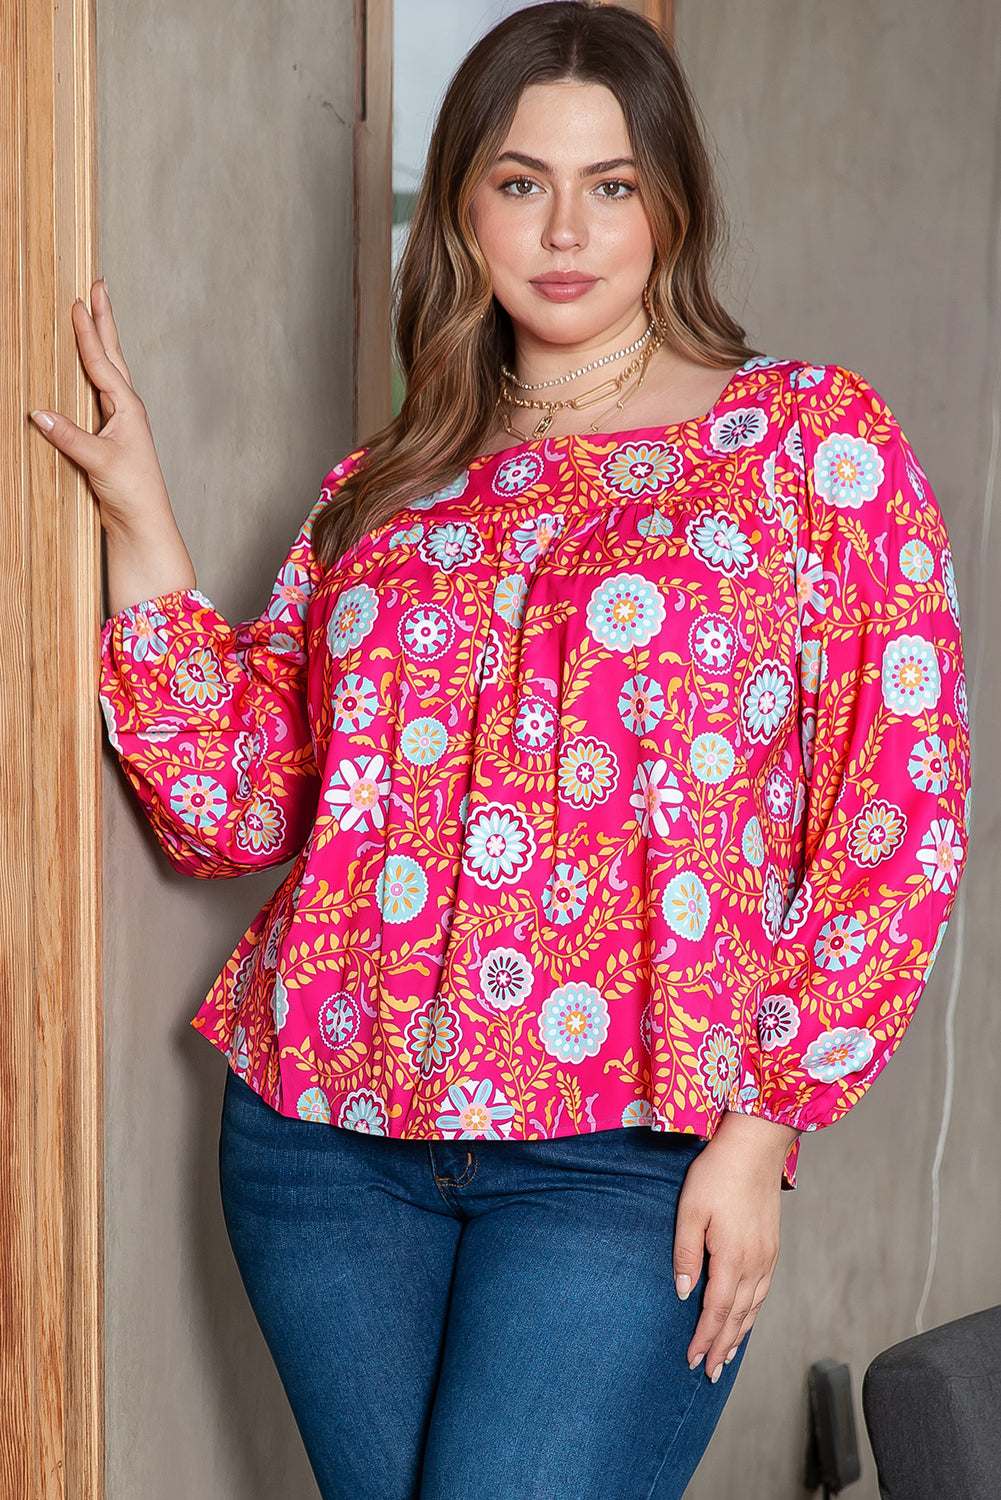 Rožnata bluza s cvetličnim ovratnikom velike velikosti